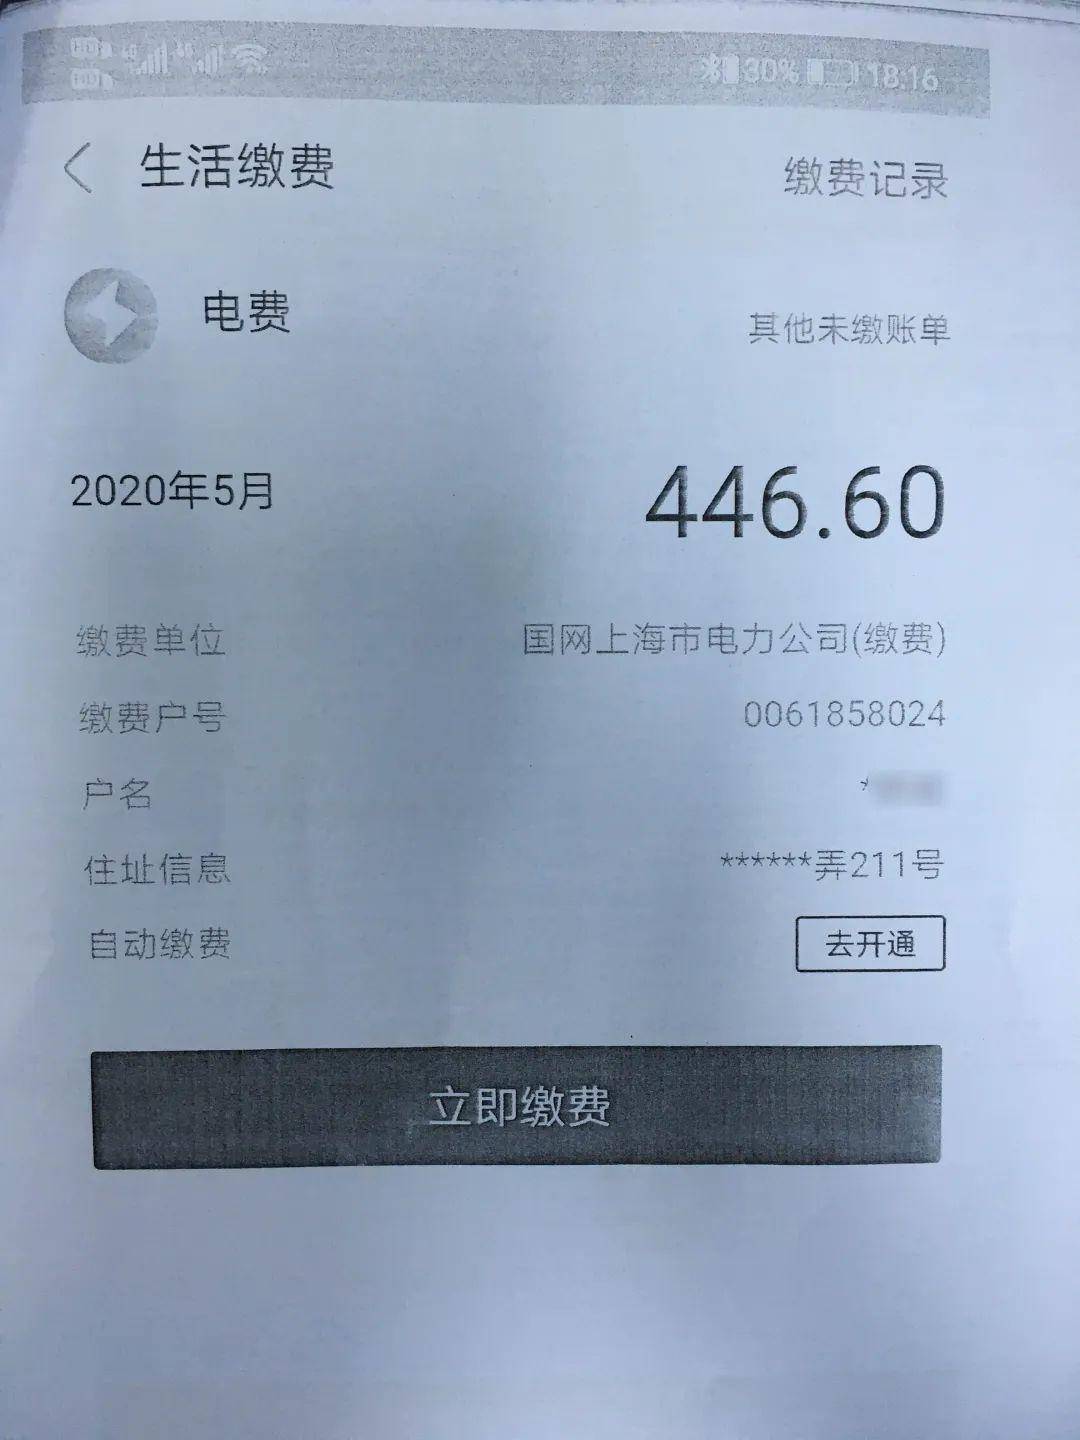 今年5月初,上海市宝山区市民张先生突然收到了一张400多元的电费